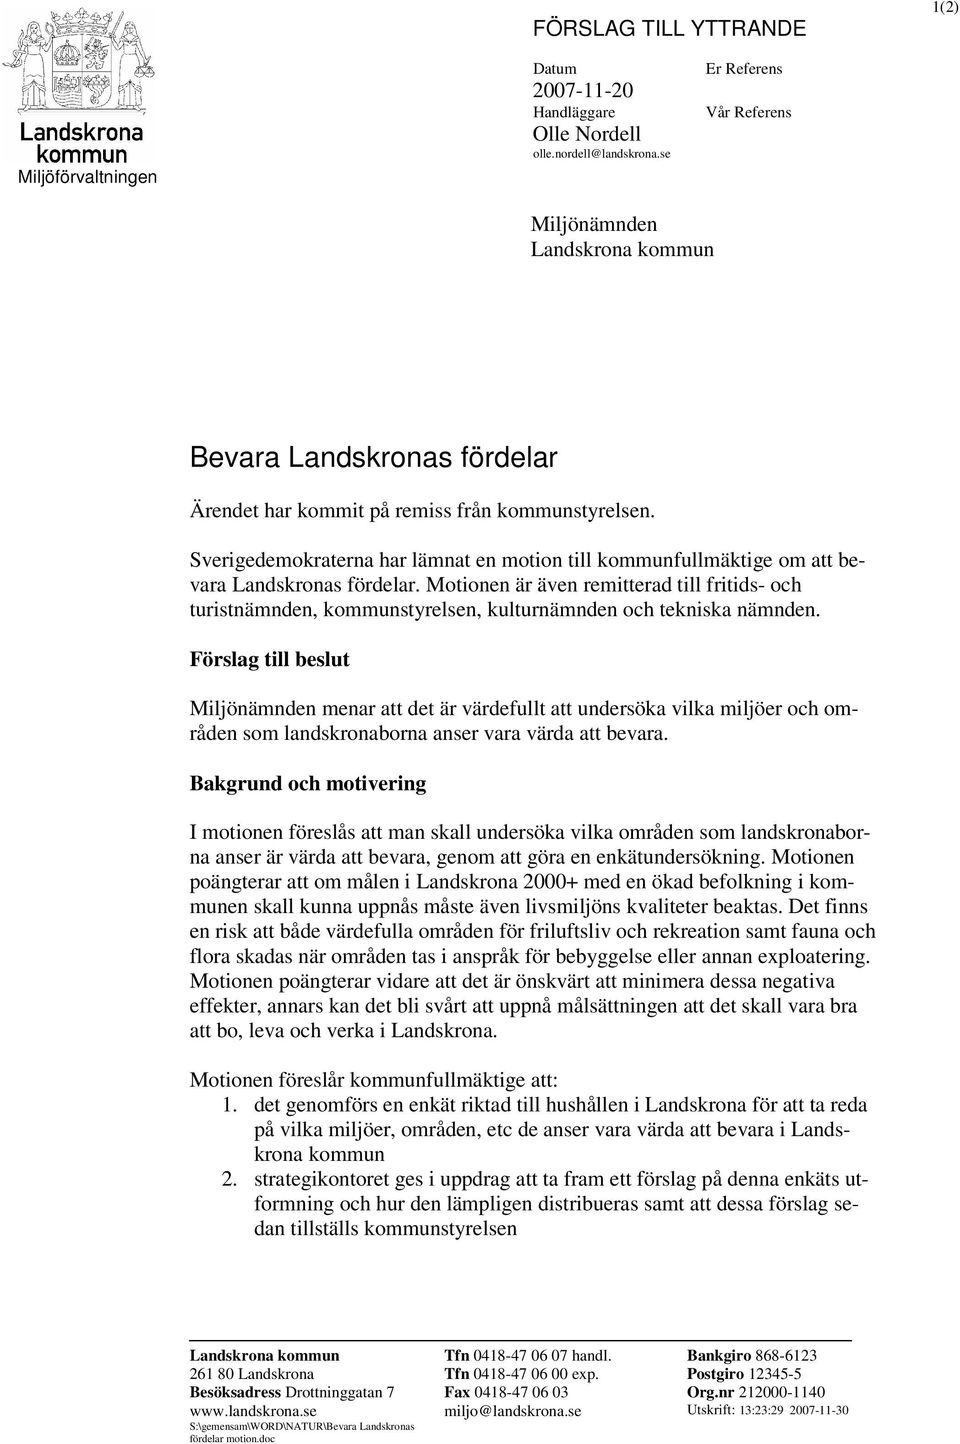 Sverigedemokraterna har lämnat en motion till kommunfullmäktige om att bevara Landskronas fördelar.